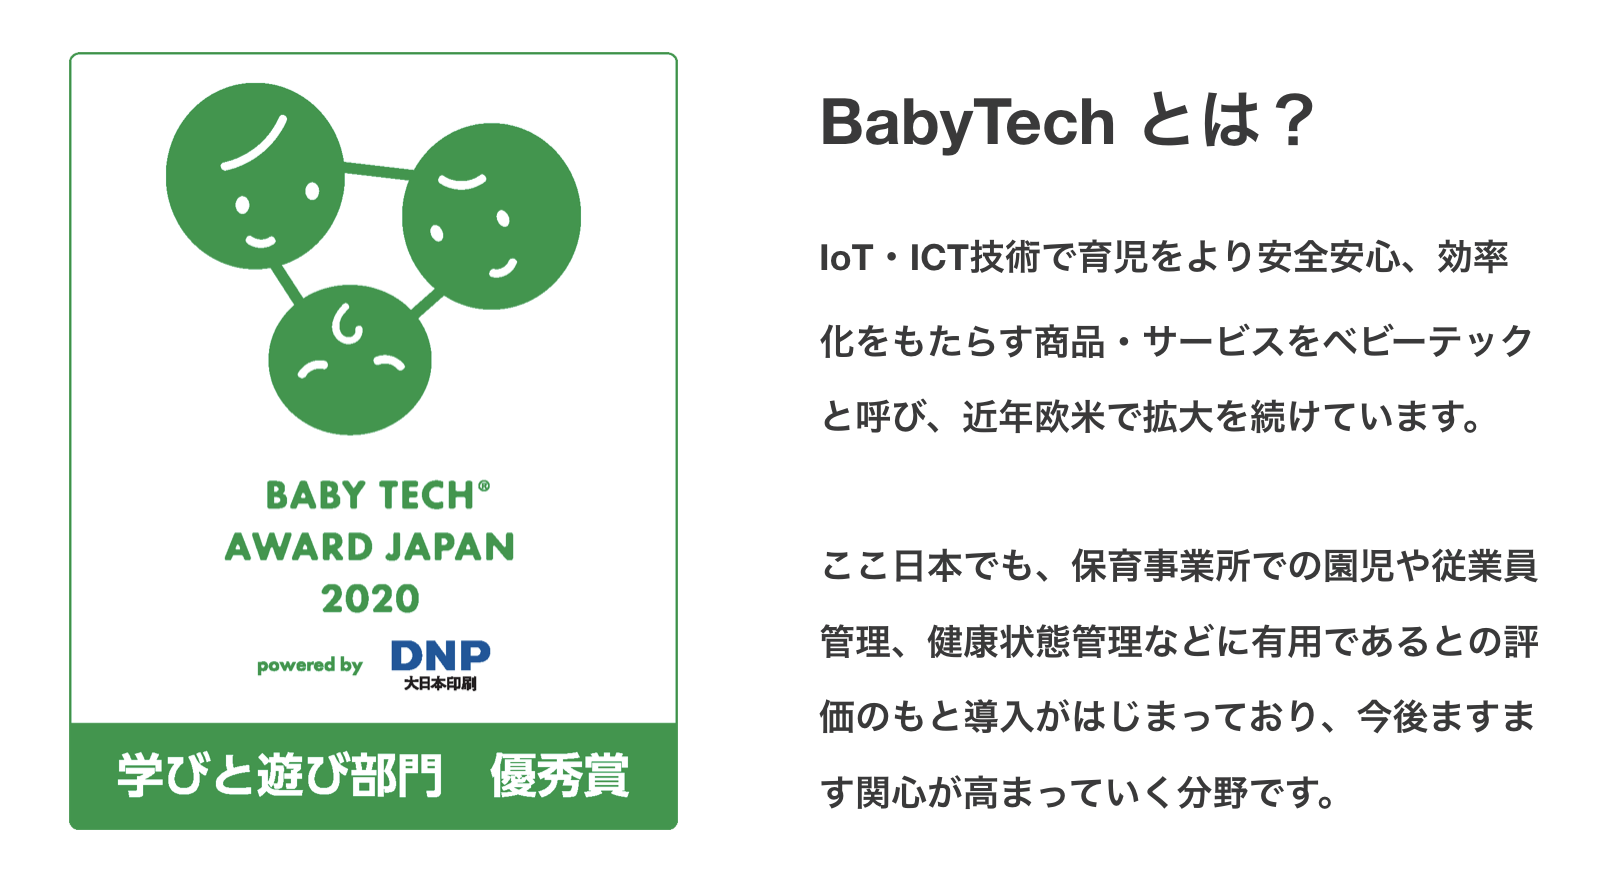 BabyTechとは？IoT・ICT技術で育児をより安全安心、効率化をもたらす商品・サービスをベビーテックと呼び、近年欧米で拡大を続けています。ここ日本でも、保育事業所での園児や従業員管理、健康状態管理などに有用であるとの評価のもと導入がはじまっており、今後ますます関心が高まっていく分野です。